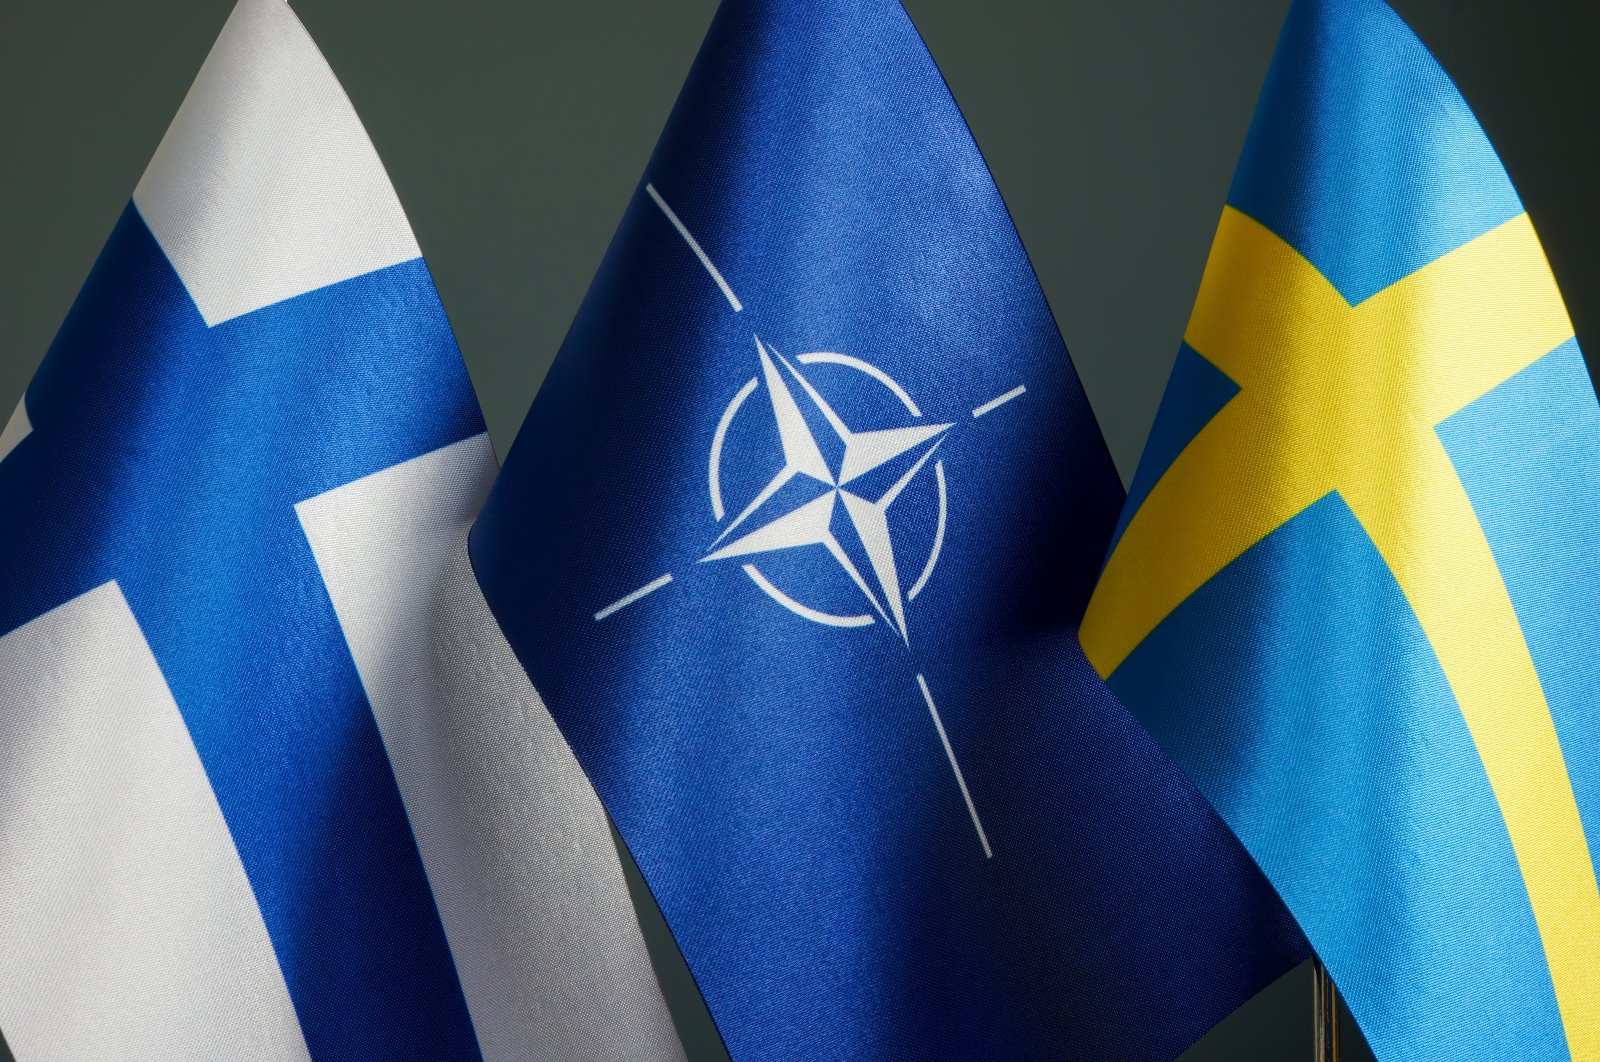 Apa yang direncanakan Finlandia dan Swedia untuk keanggotaan NATO?